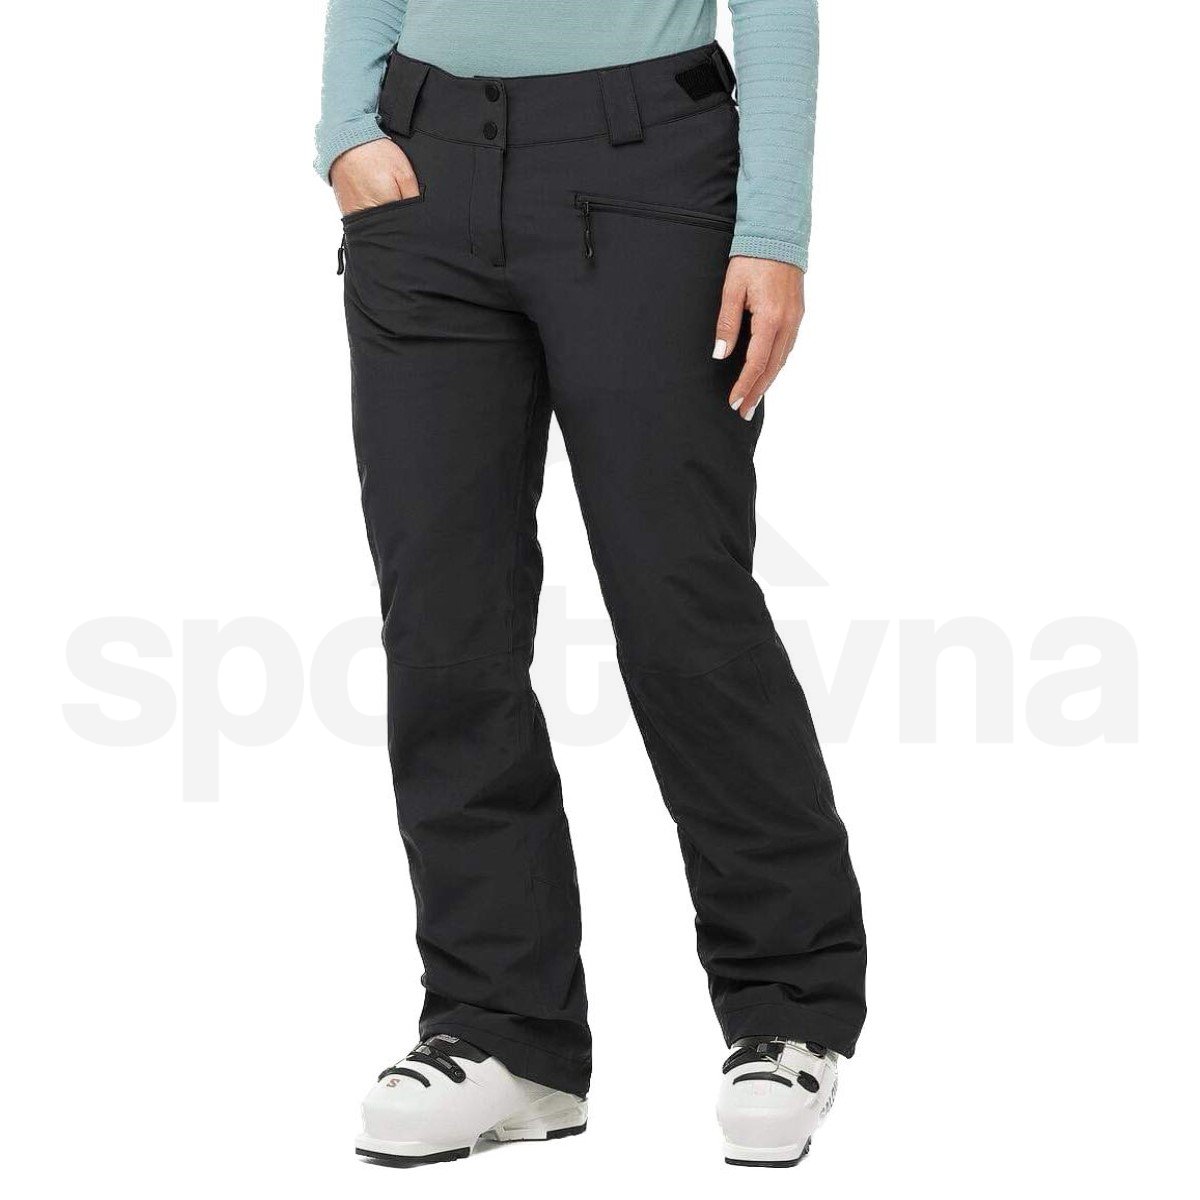 Kalhoty Salomon Edge Pant W - černá (zkrácená délka)